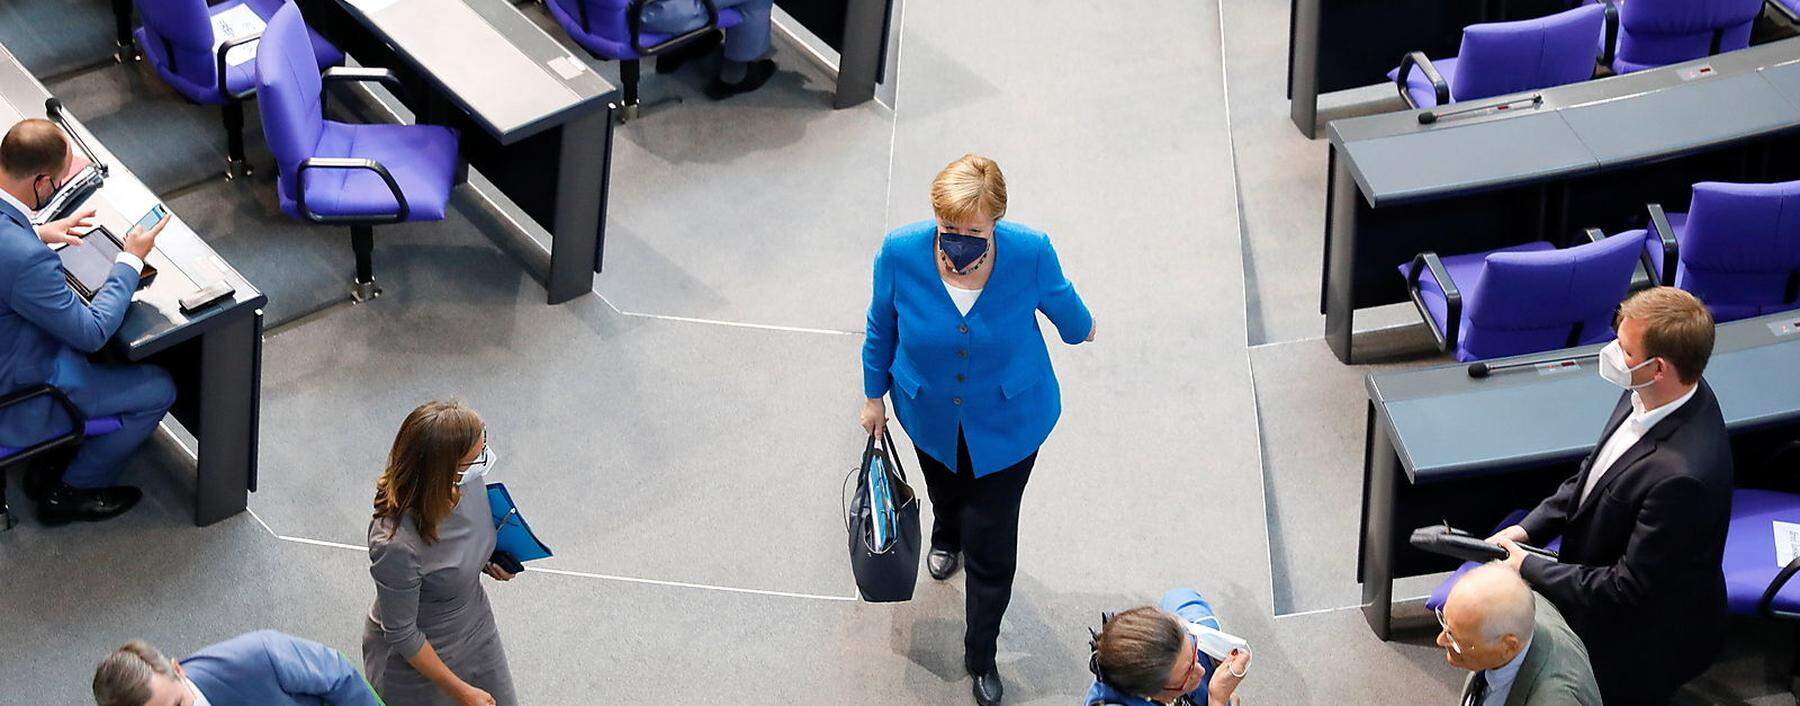 Sie wird dem nächsten Bundestag nicht angehören, Bundeskanzlerin Angela Merkel verlässt die Politik-Bühne.